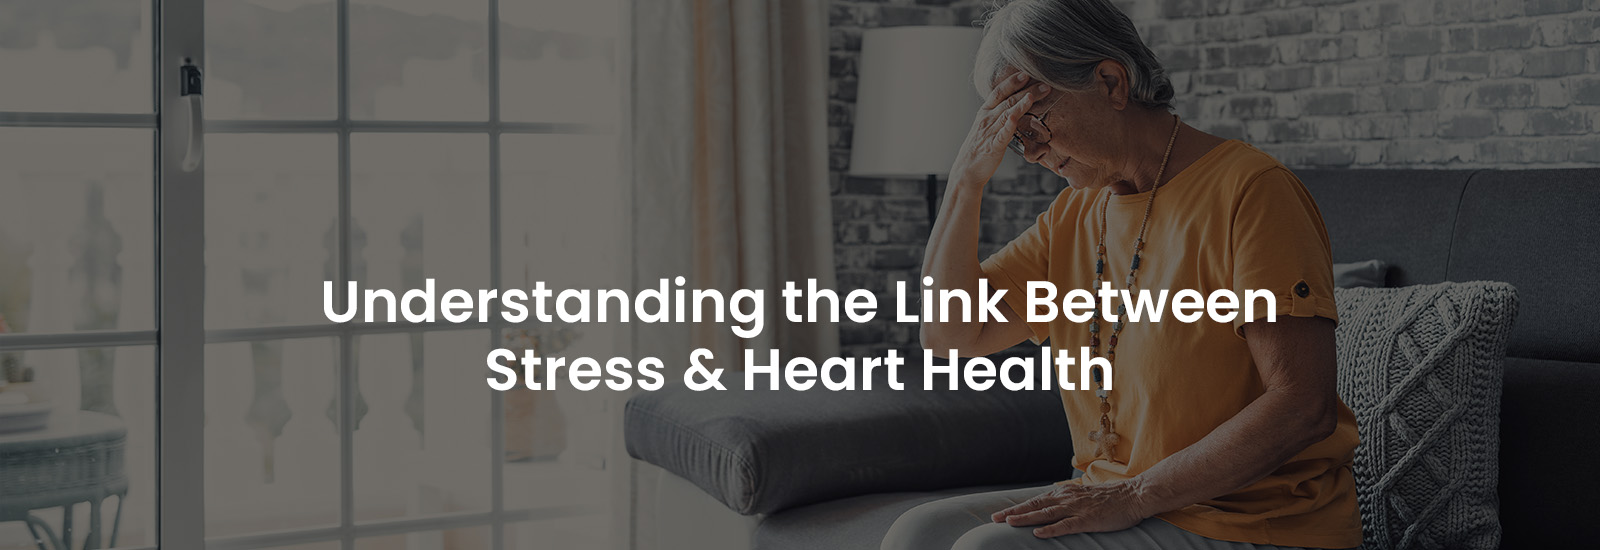 Understanding the Link Between Stress & Heart Health | Banner Image